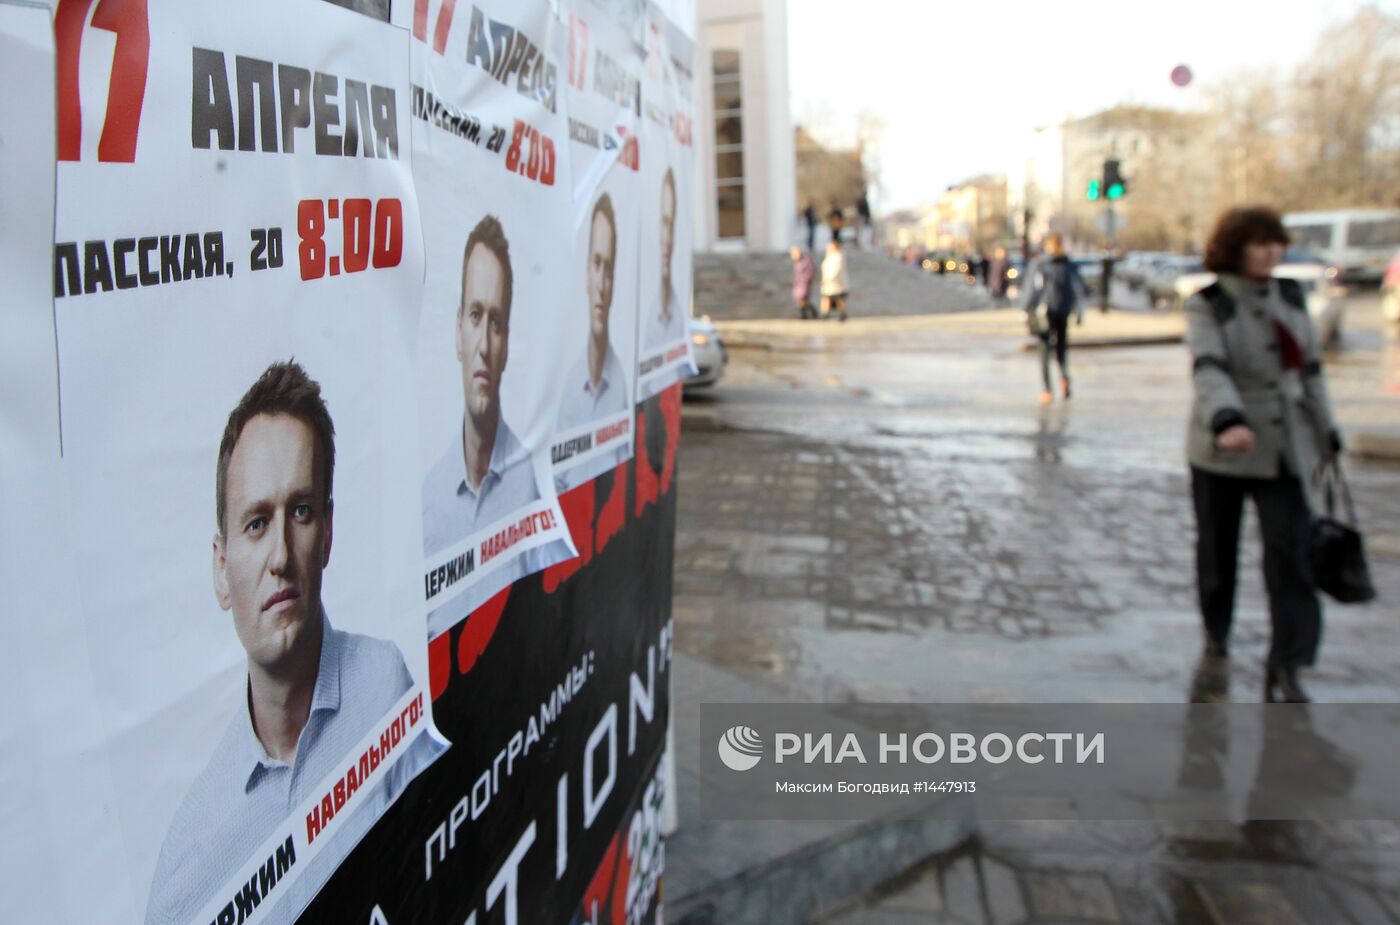 Сторонники Навального в Кирове. День до суда